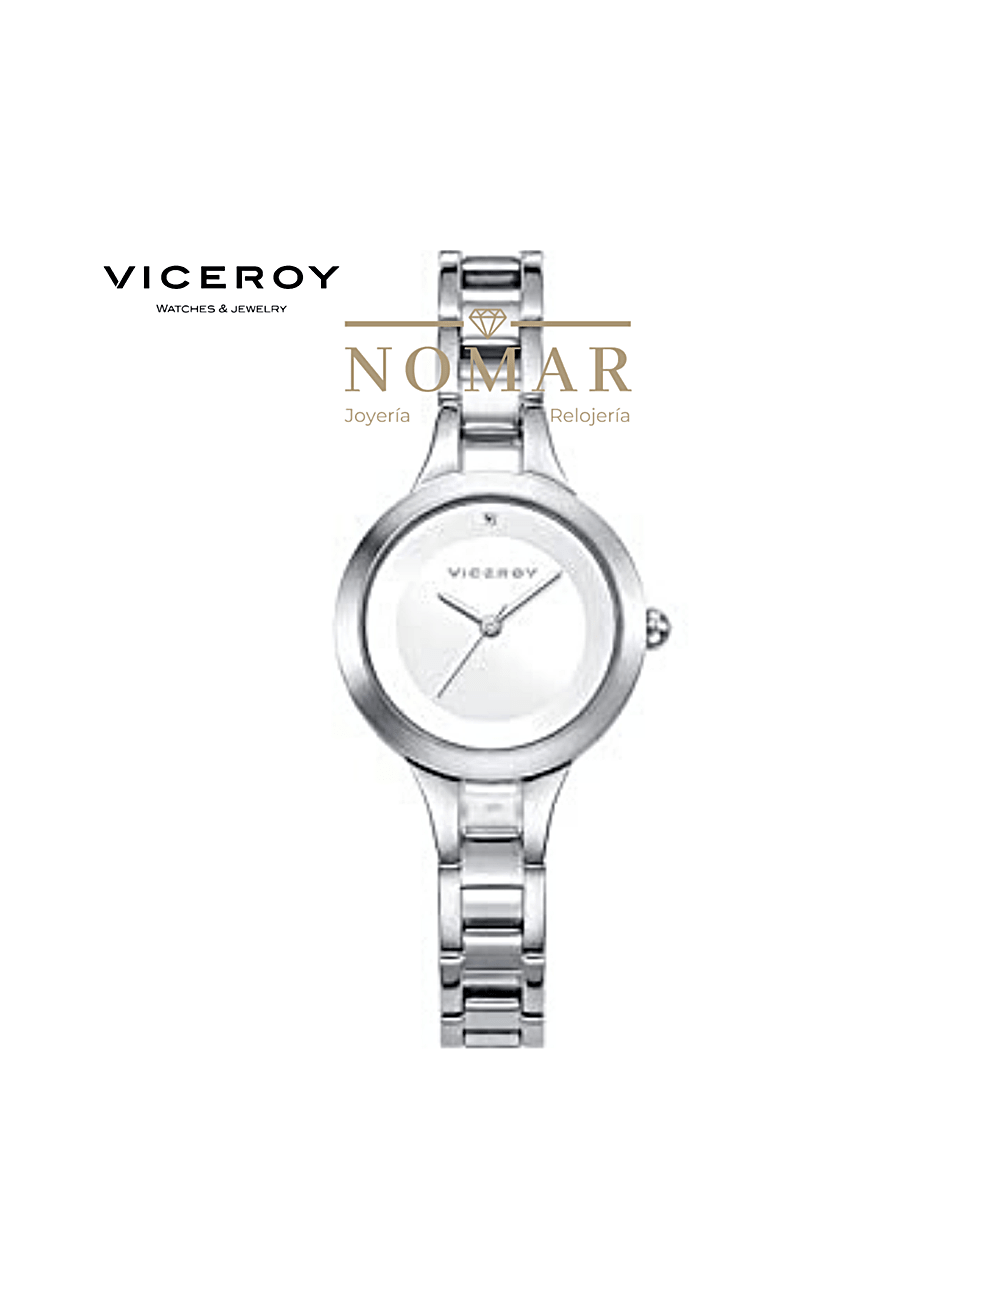 Comprar online y barato Reloj mujer Viceroy acero 3 agujas números árabes  ref. 401072-05 sin costes de envío.